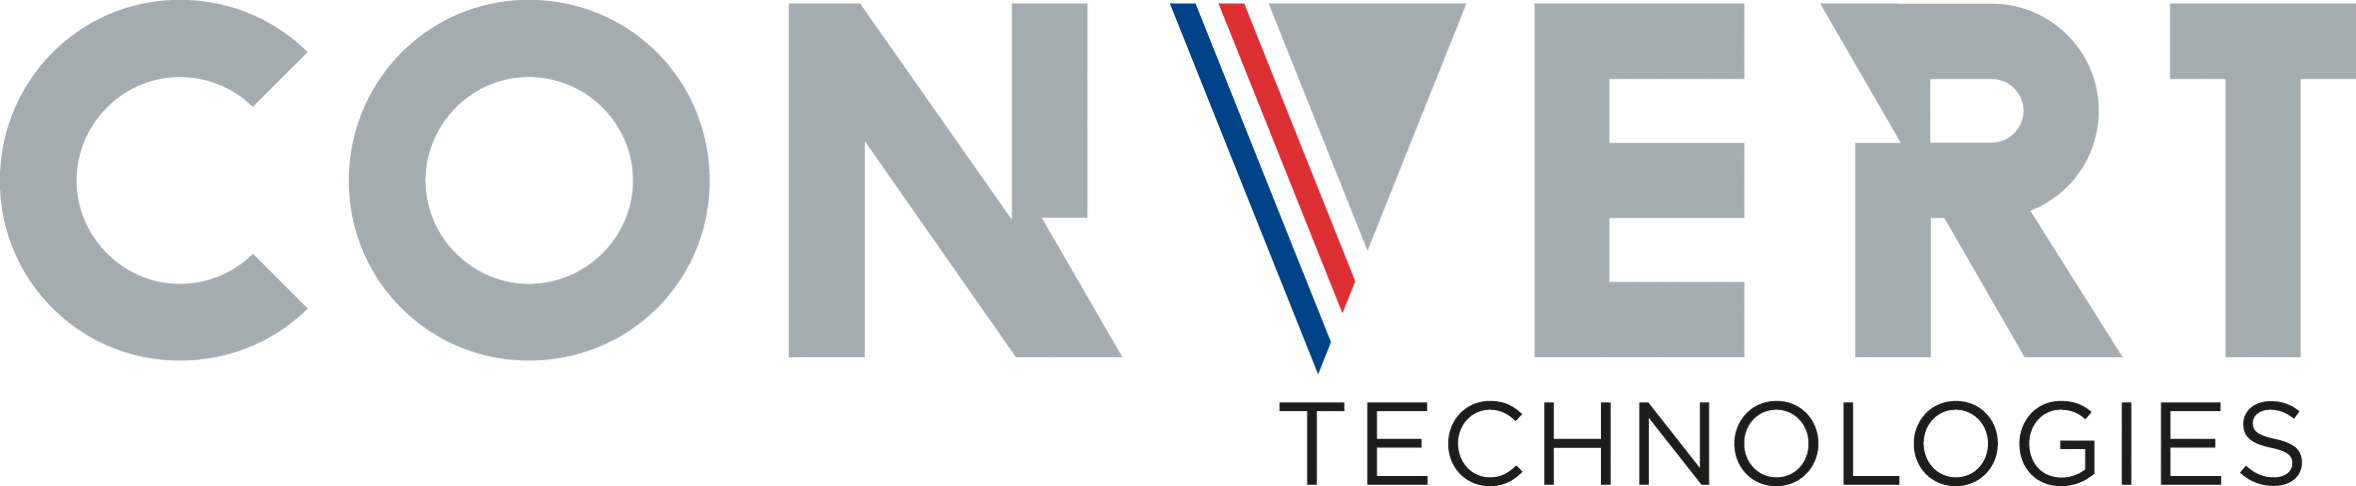 Convert Technologies Logo